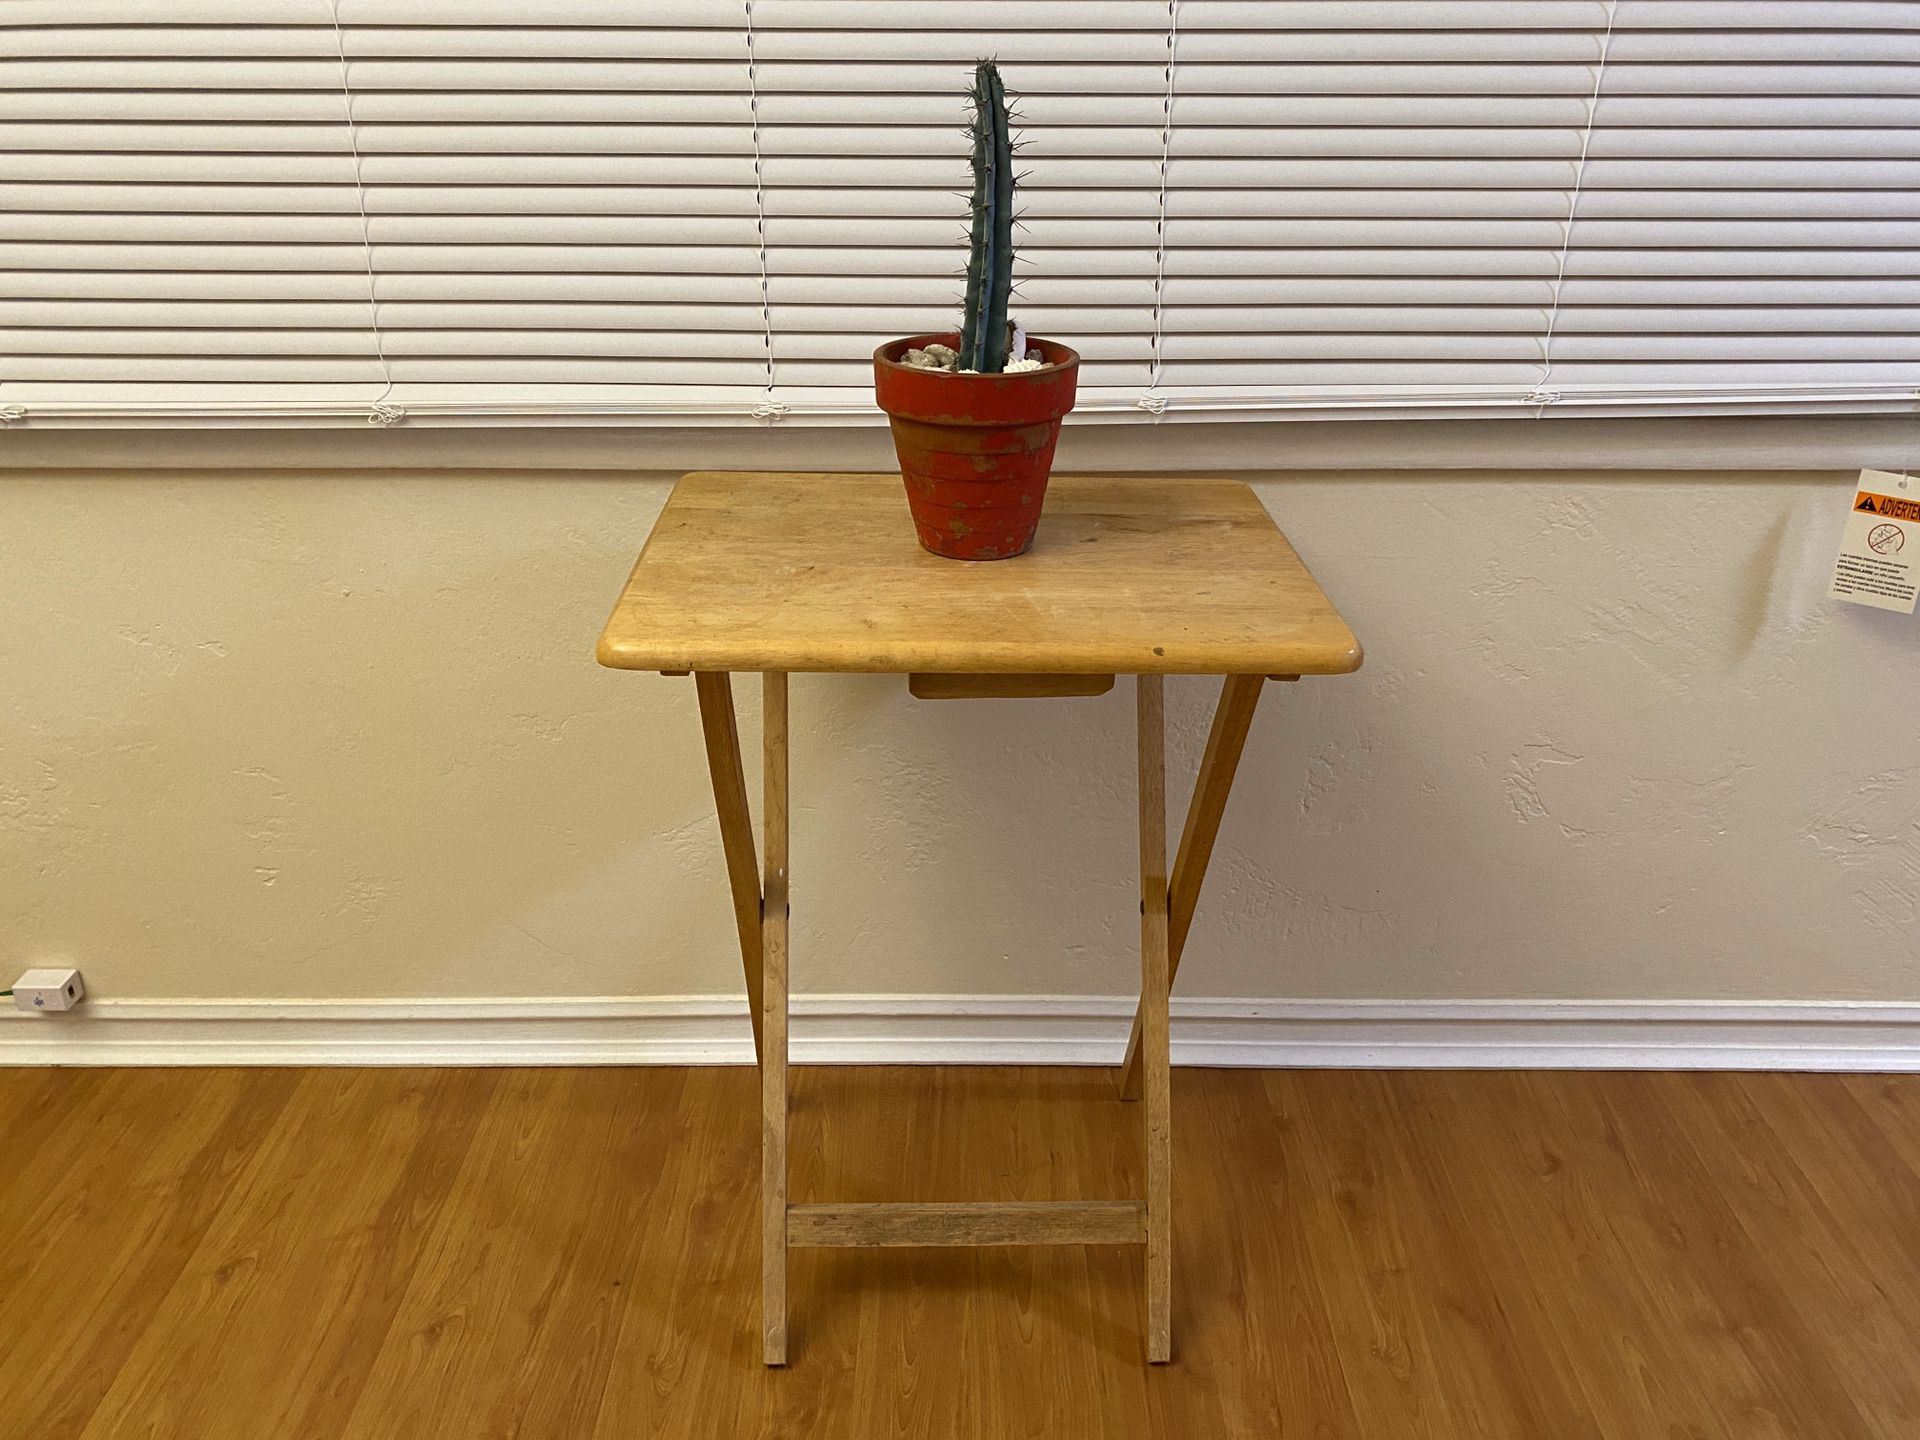 Stylish folding wooden table